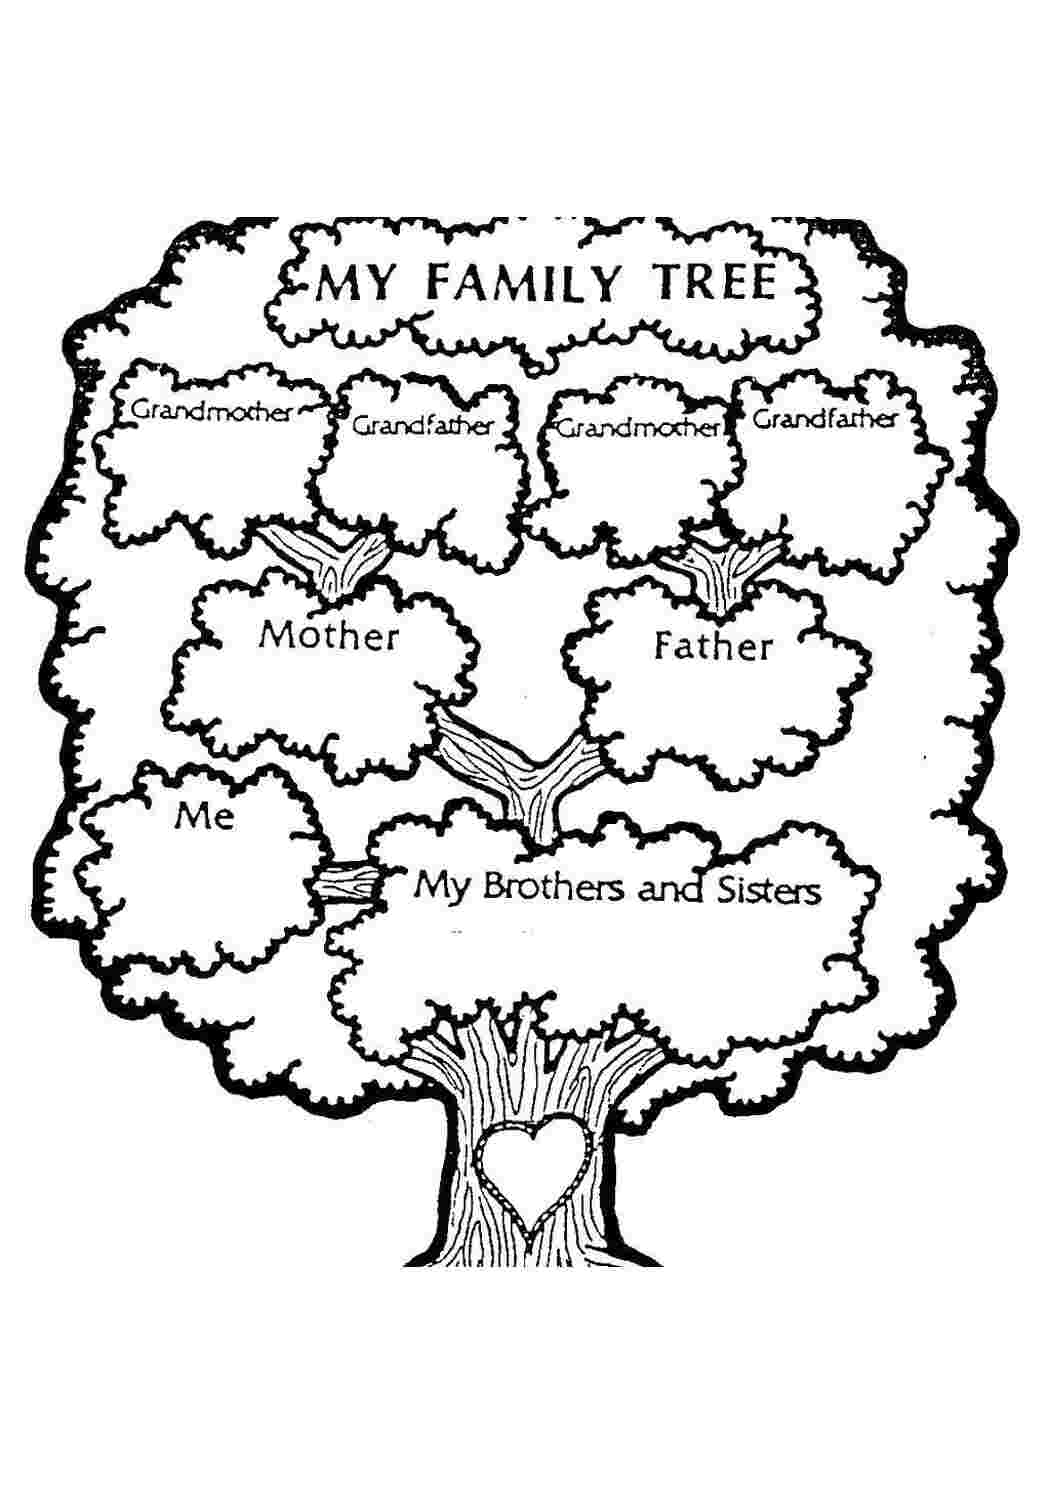 Как переводится на английский слово «семейное дерево»?